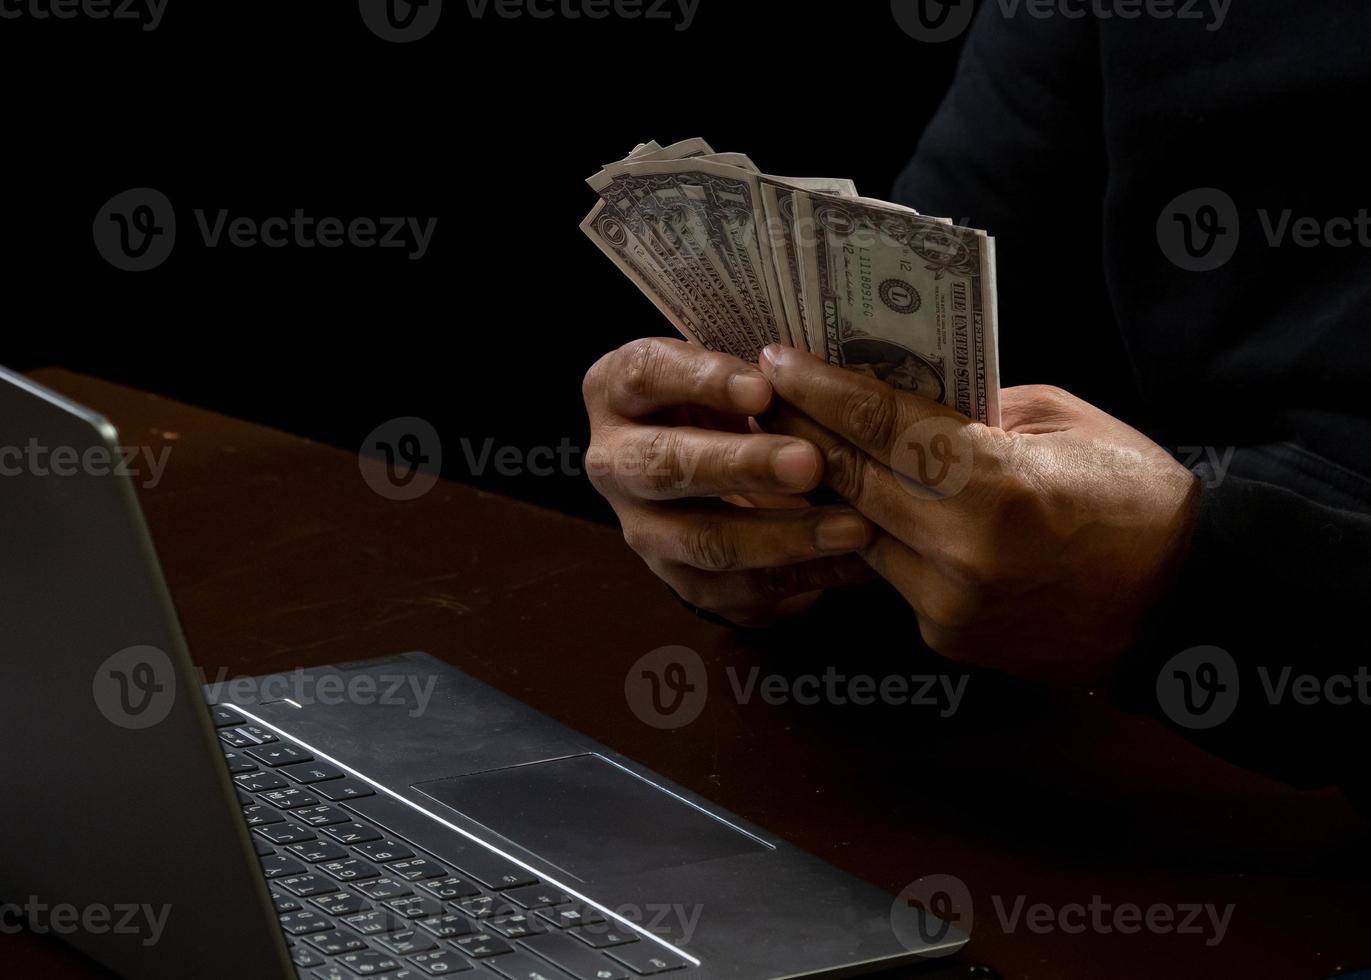 l'ordinateur et les mains d'un homme vêtu d'une chemise noire, assis sur une chaise et une table, est un voleur, détenant de l'argent, comptant le montant obtenu par détournement ou vol, dans une pièce noire. photo